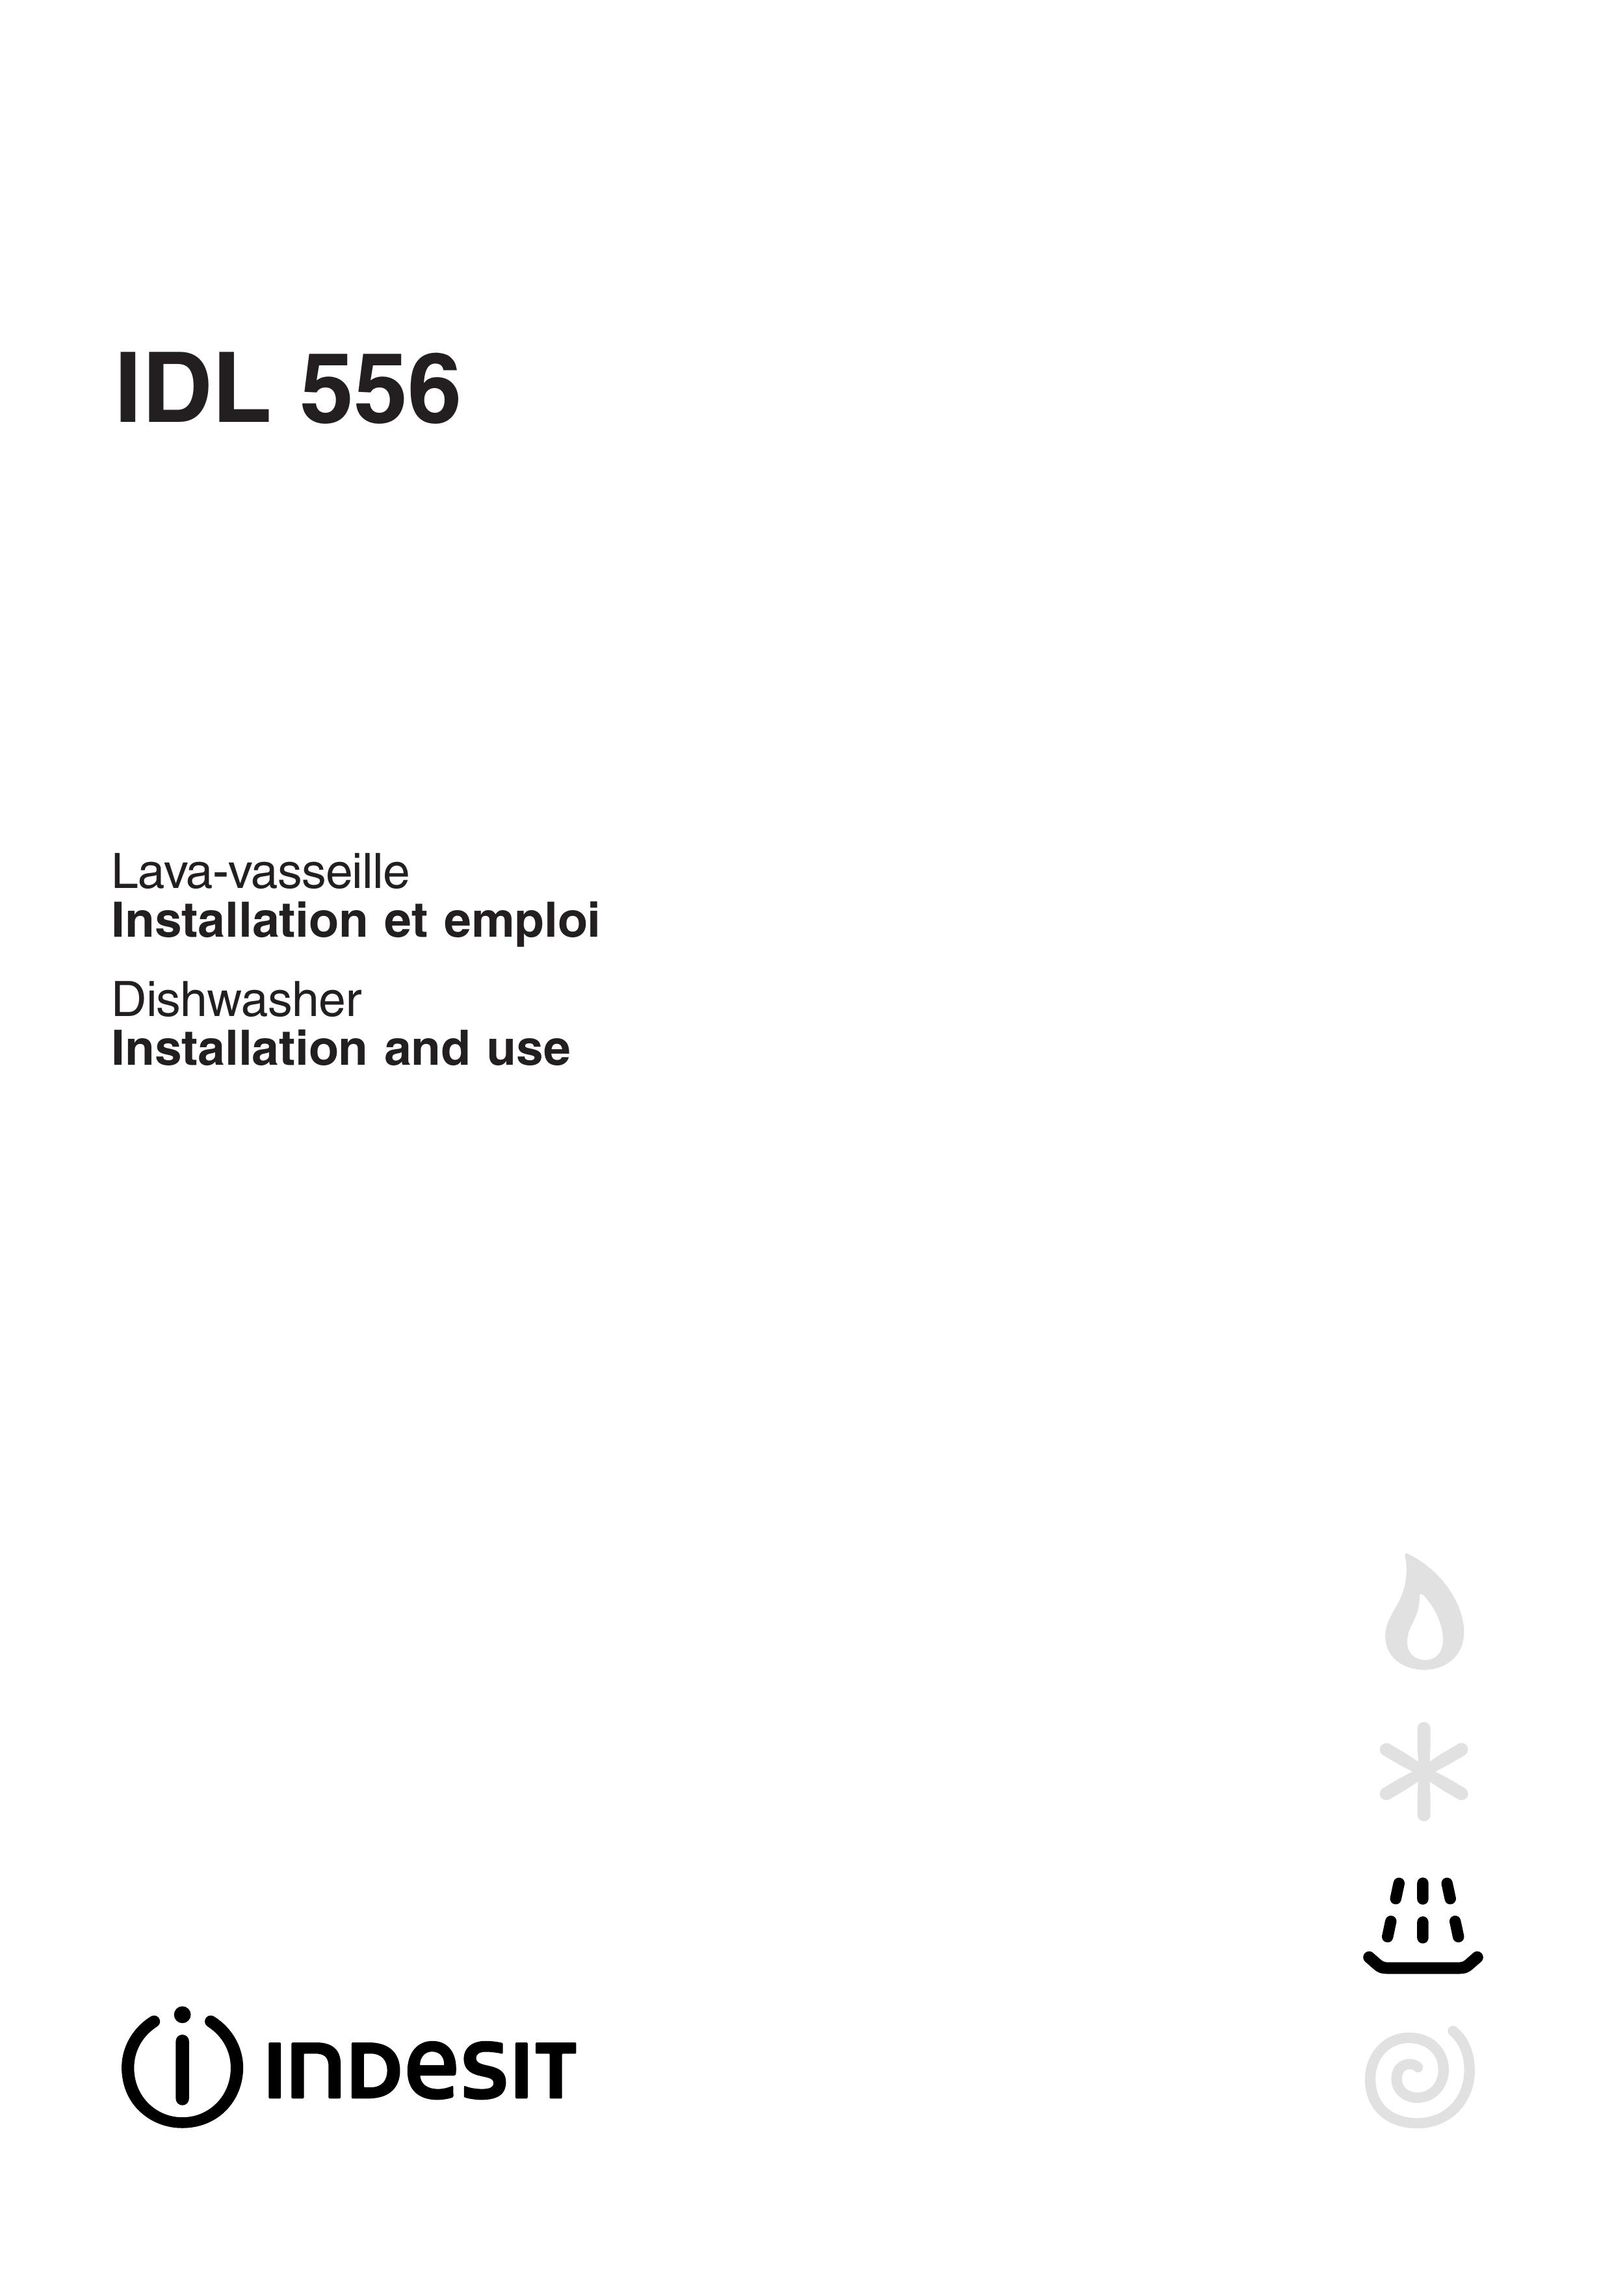 Indesit IDL 556 Dishwasher User Manual